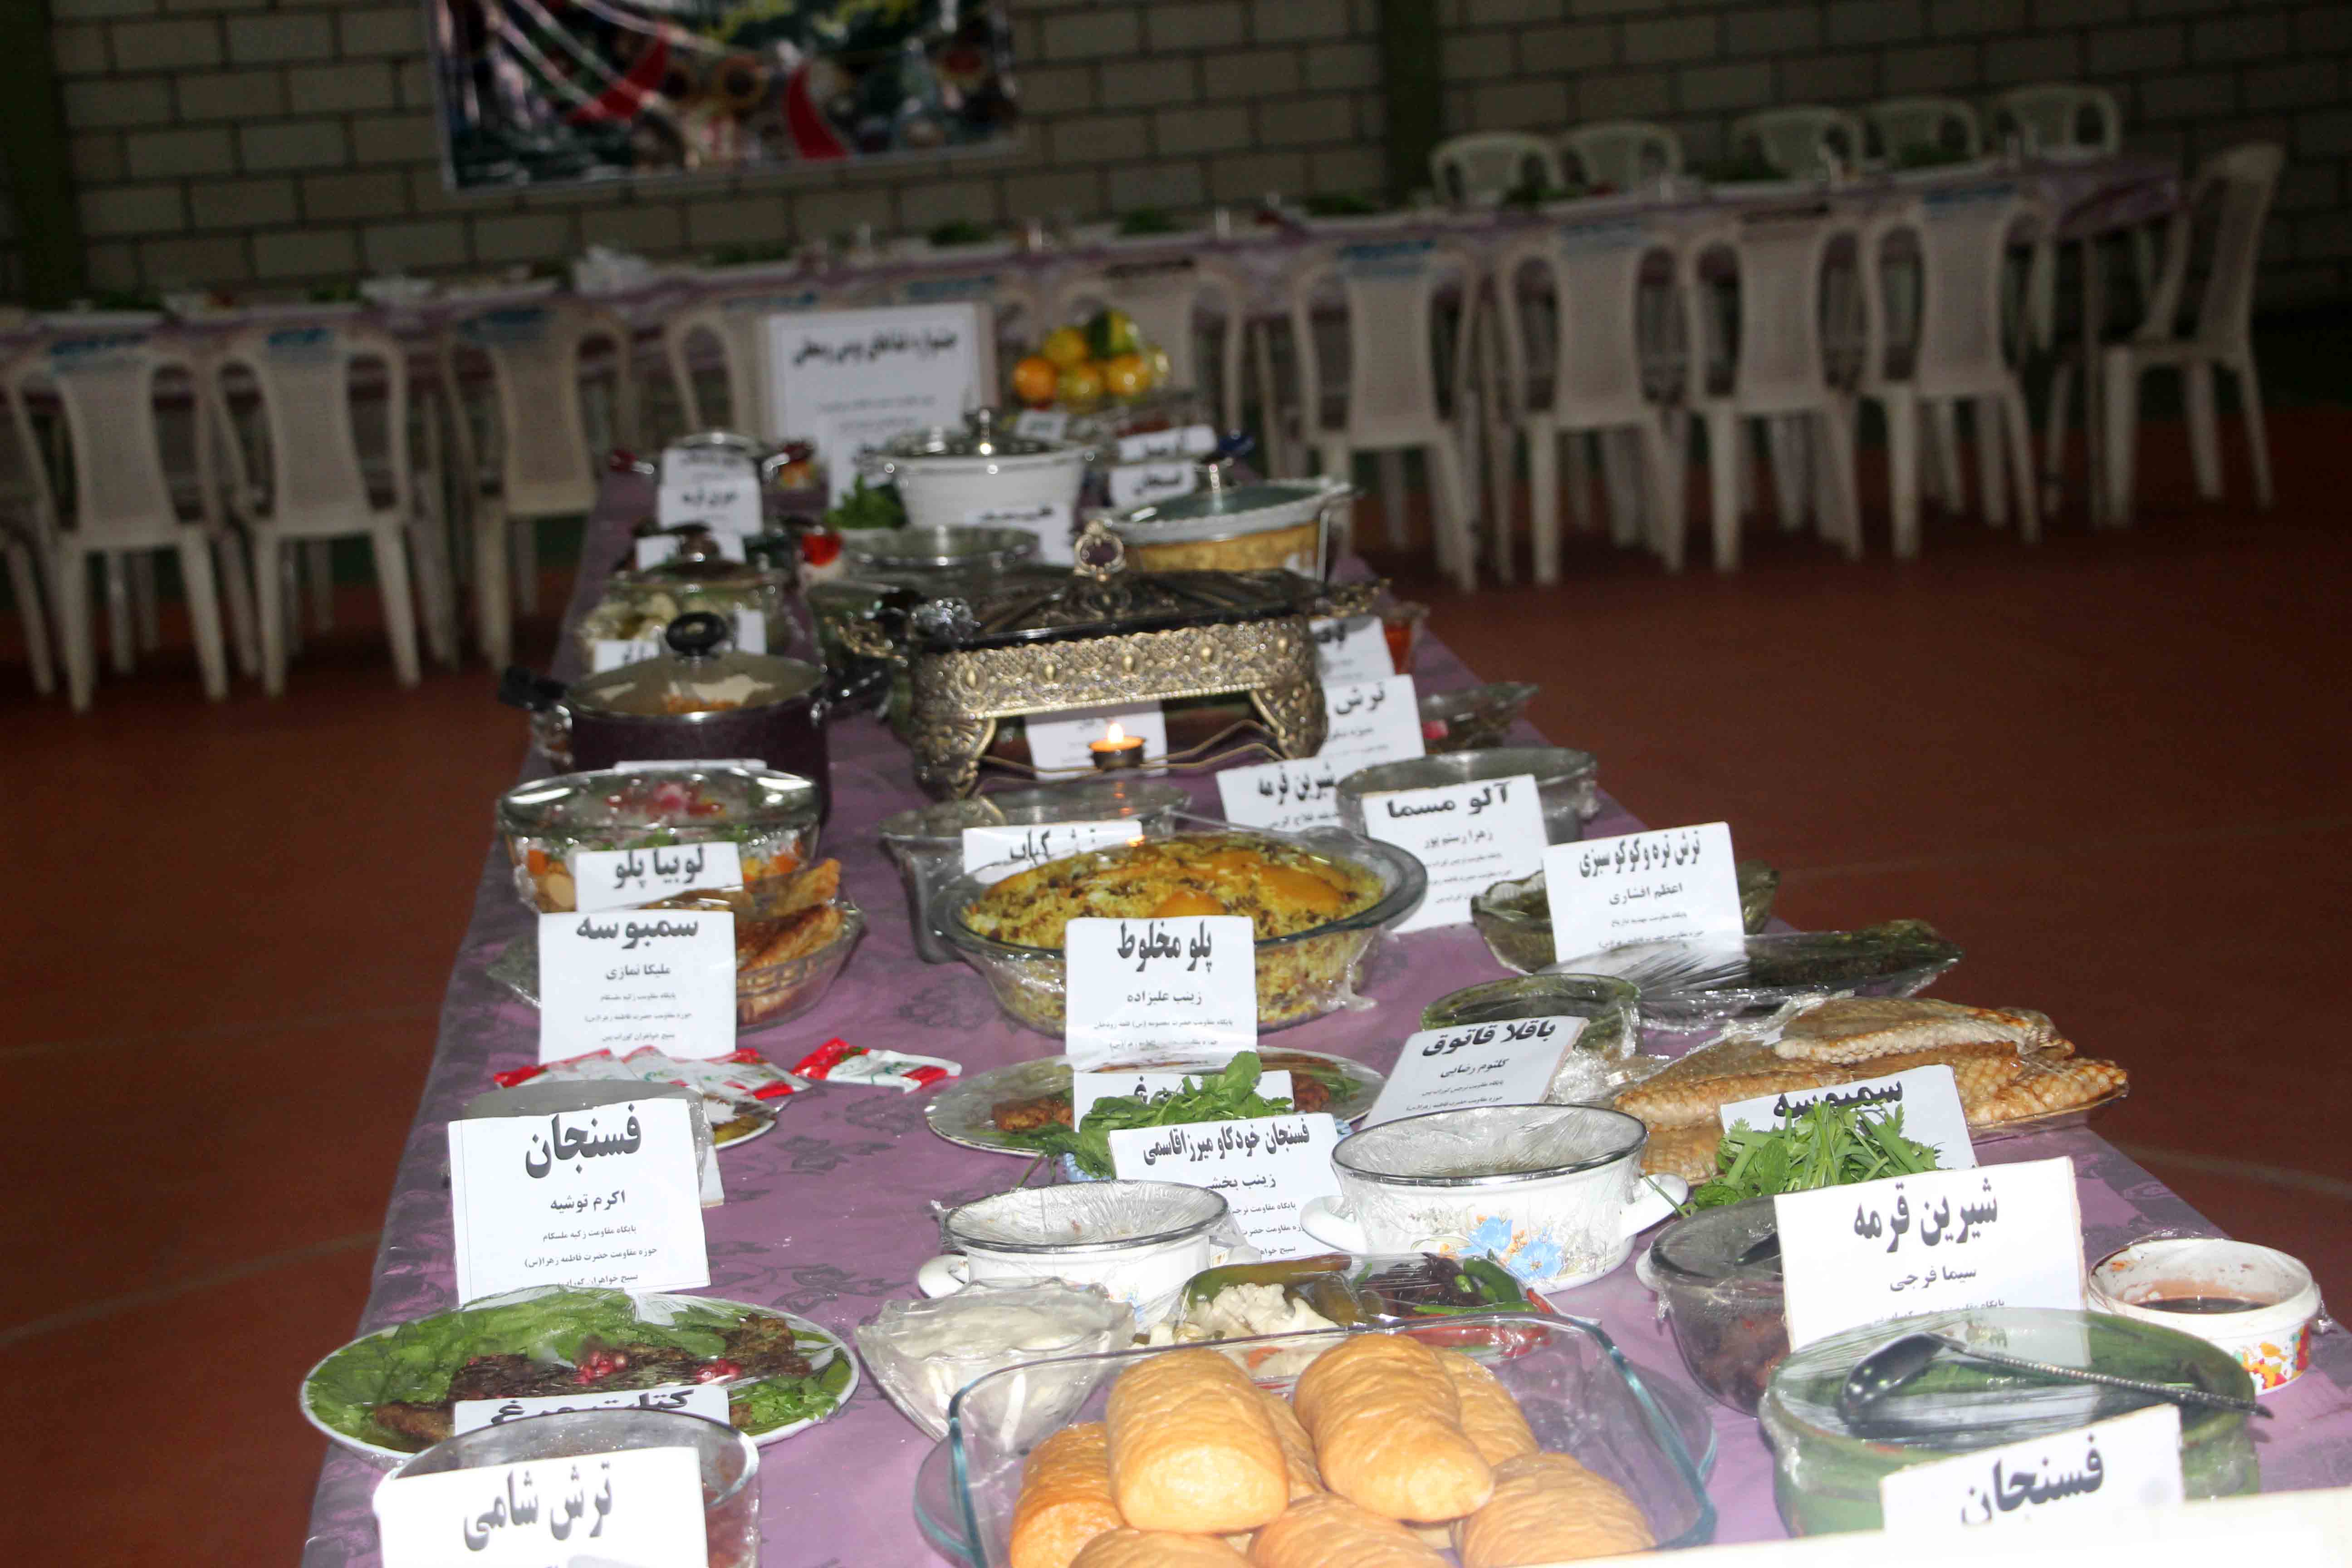 برگزاری جشنواره غذای بومی و محلی در حوزه فاطمه الزهرا (س) گوراب پس فومن+تصاویر